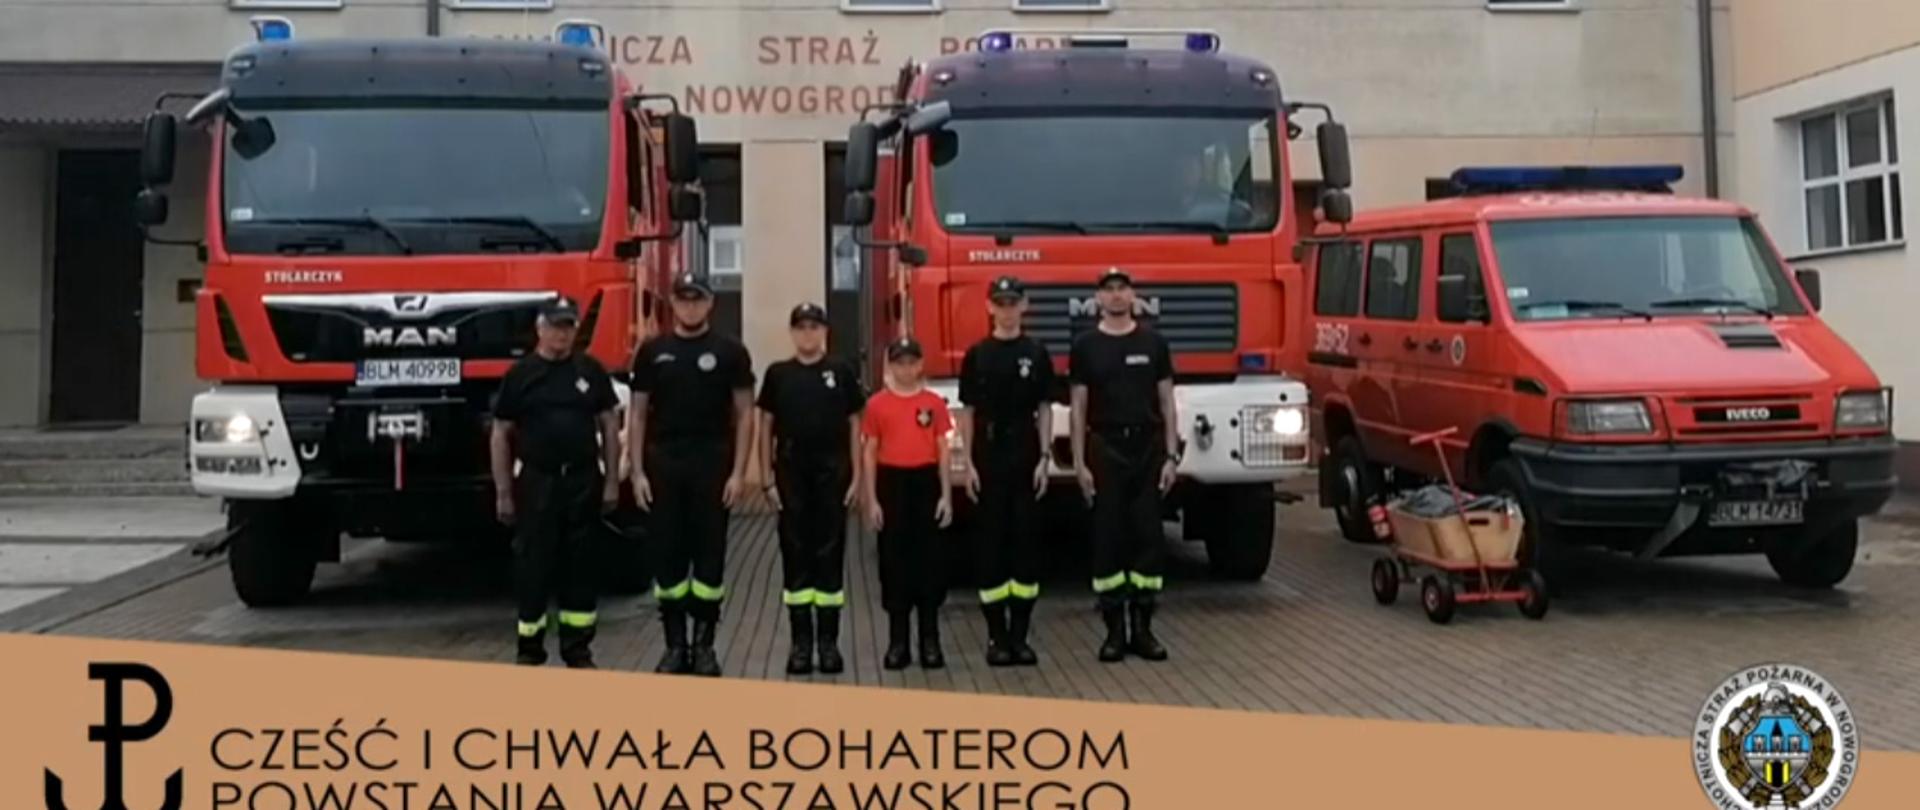 Strażacy w ubraniach koszarowych stoją przy trzech samochodach pożarniczych na terenie swojej jednostki OSP. Na zdjęciu widać również dwóch chłopców z "osiedlowej straży pożarnej" nie dawno założonej w Nowogrodzie.